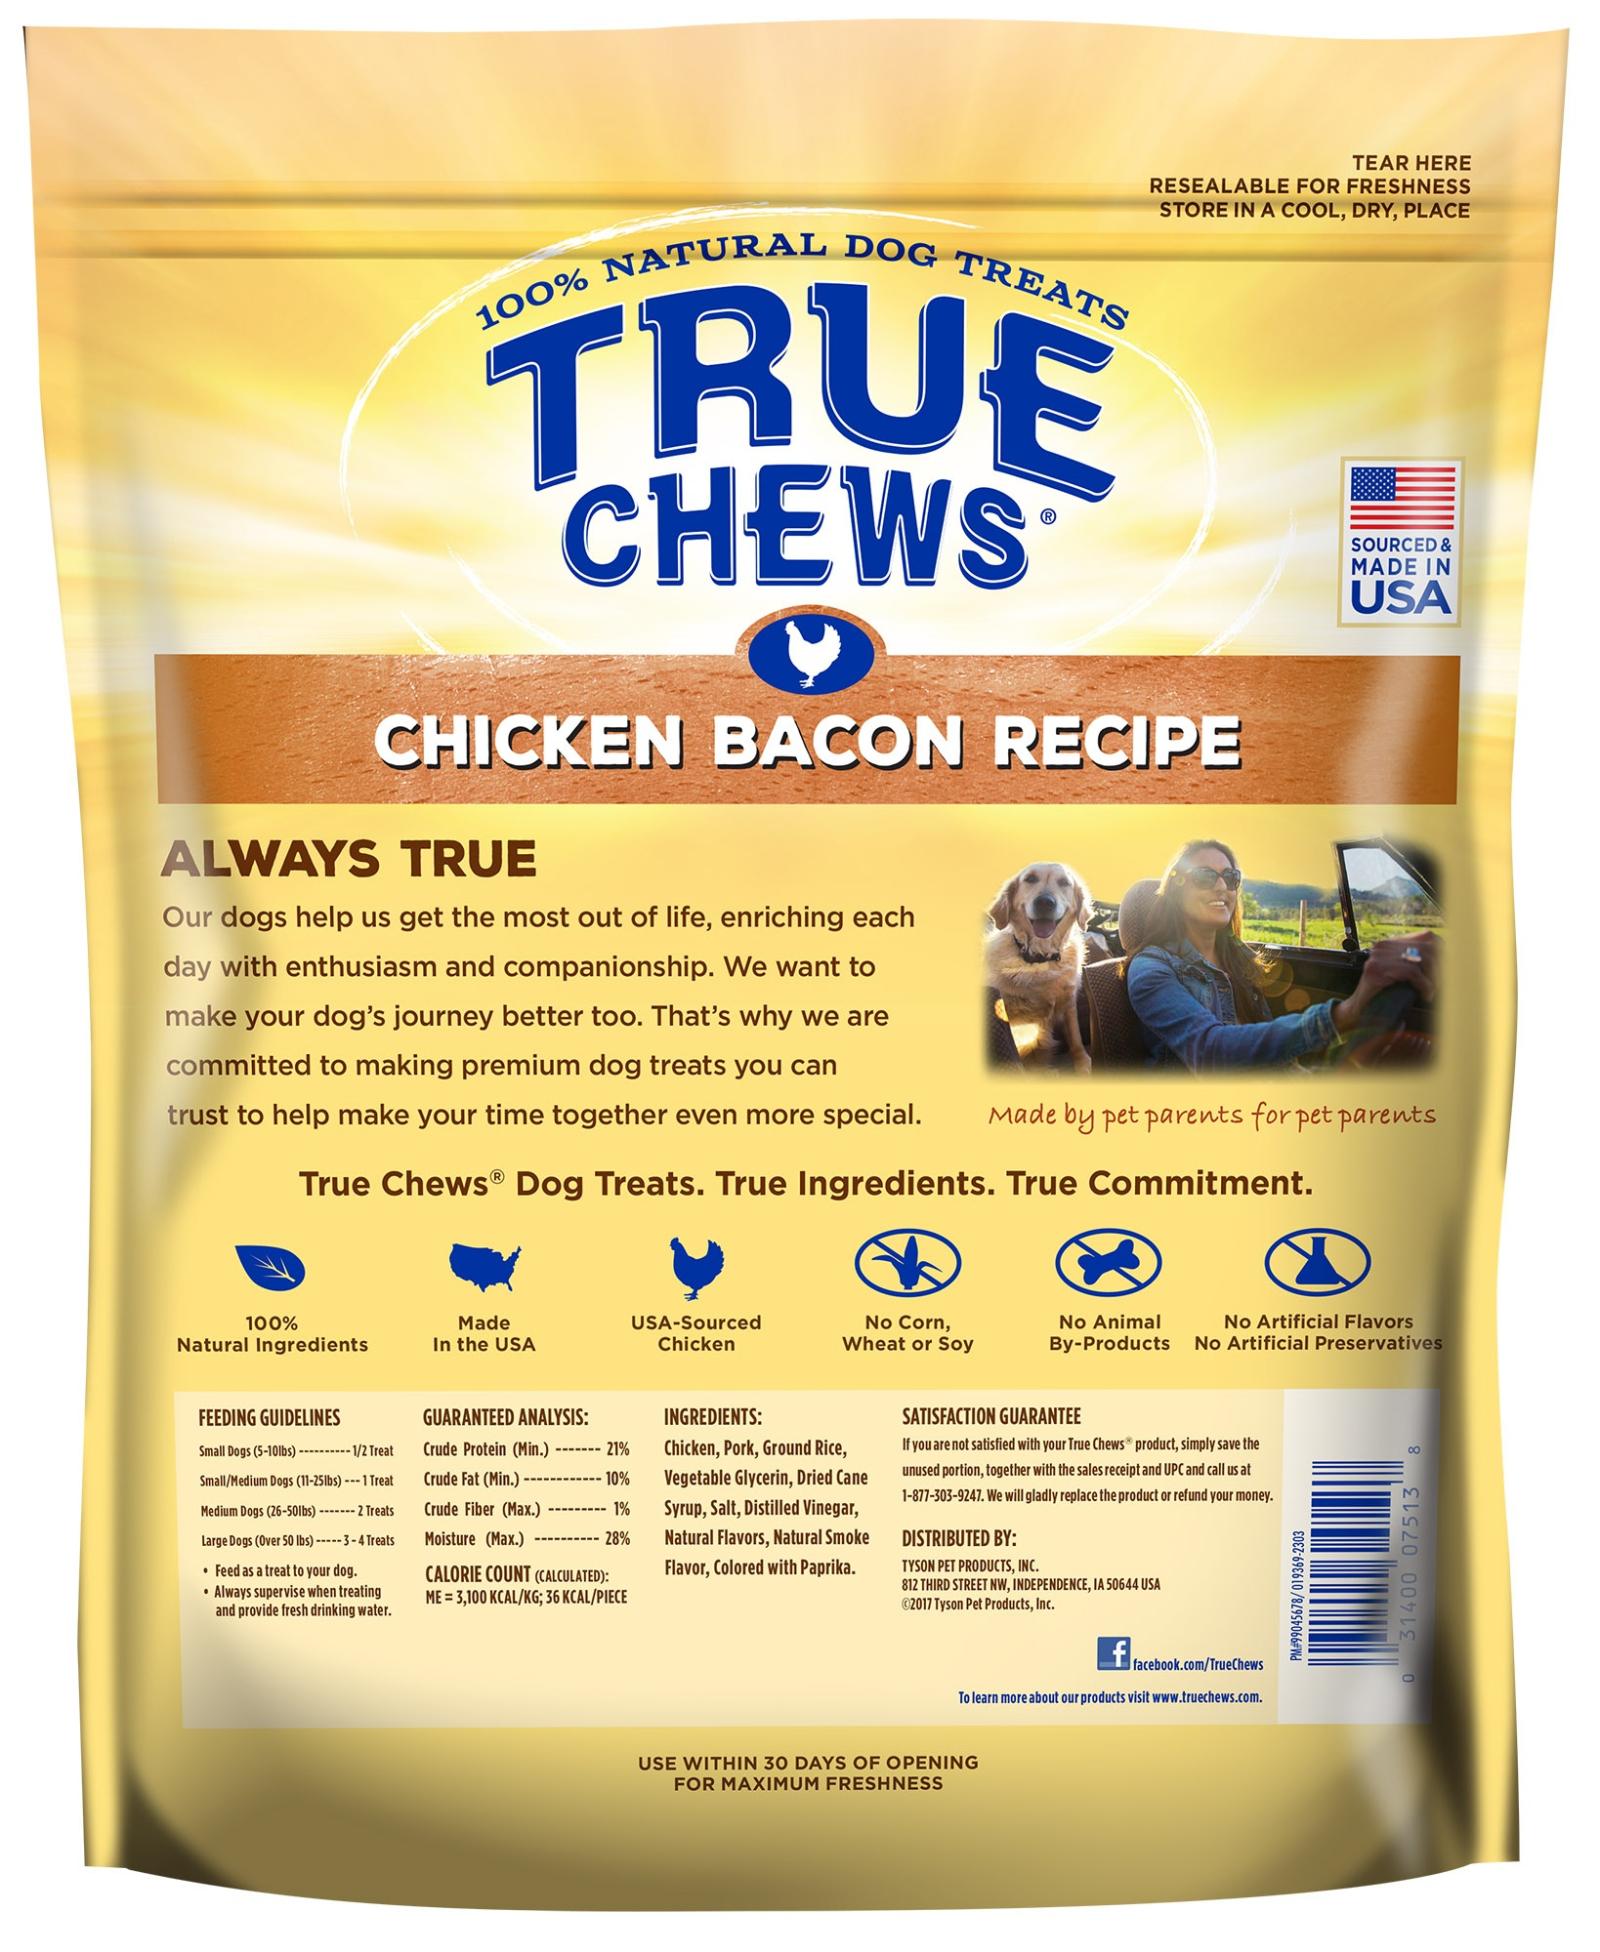 True Chews Chicken Bacon Recipe, 12 oz